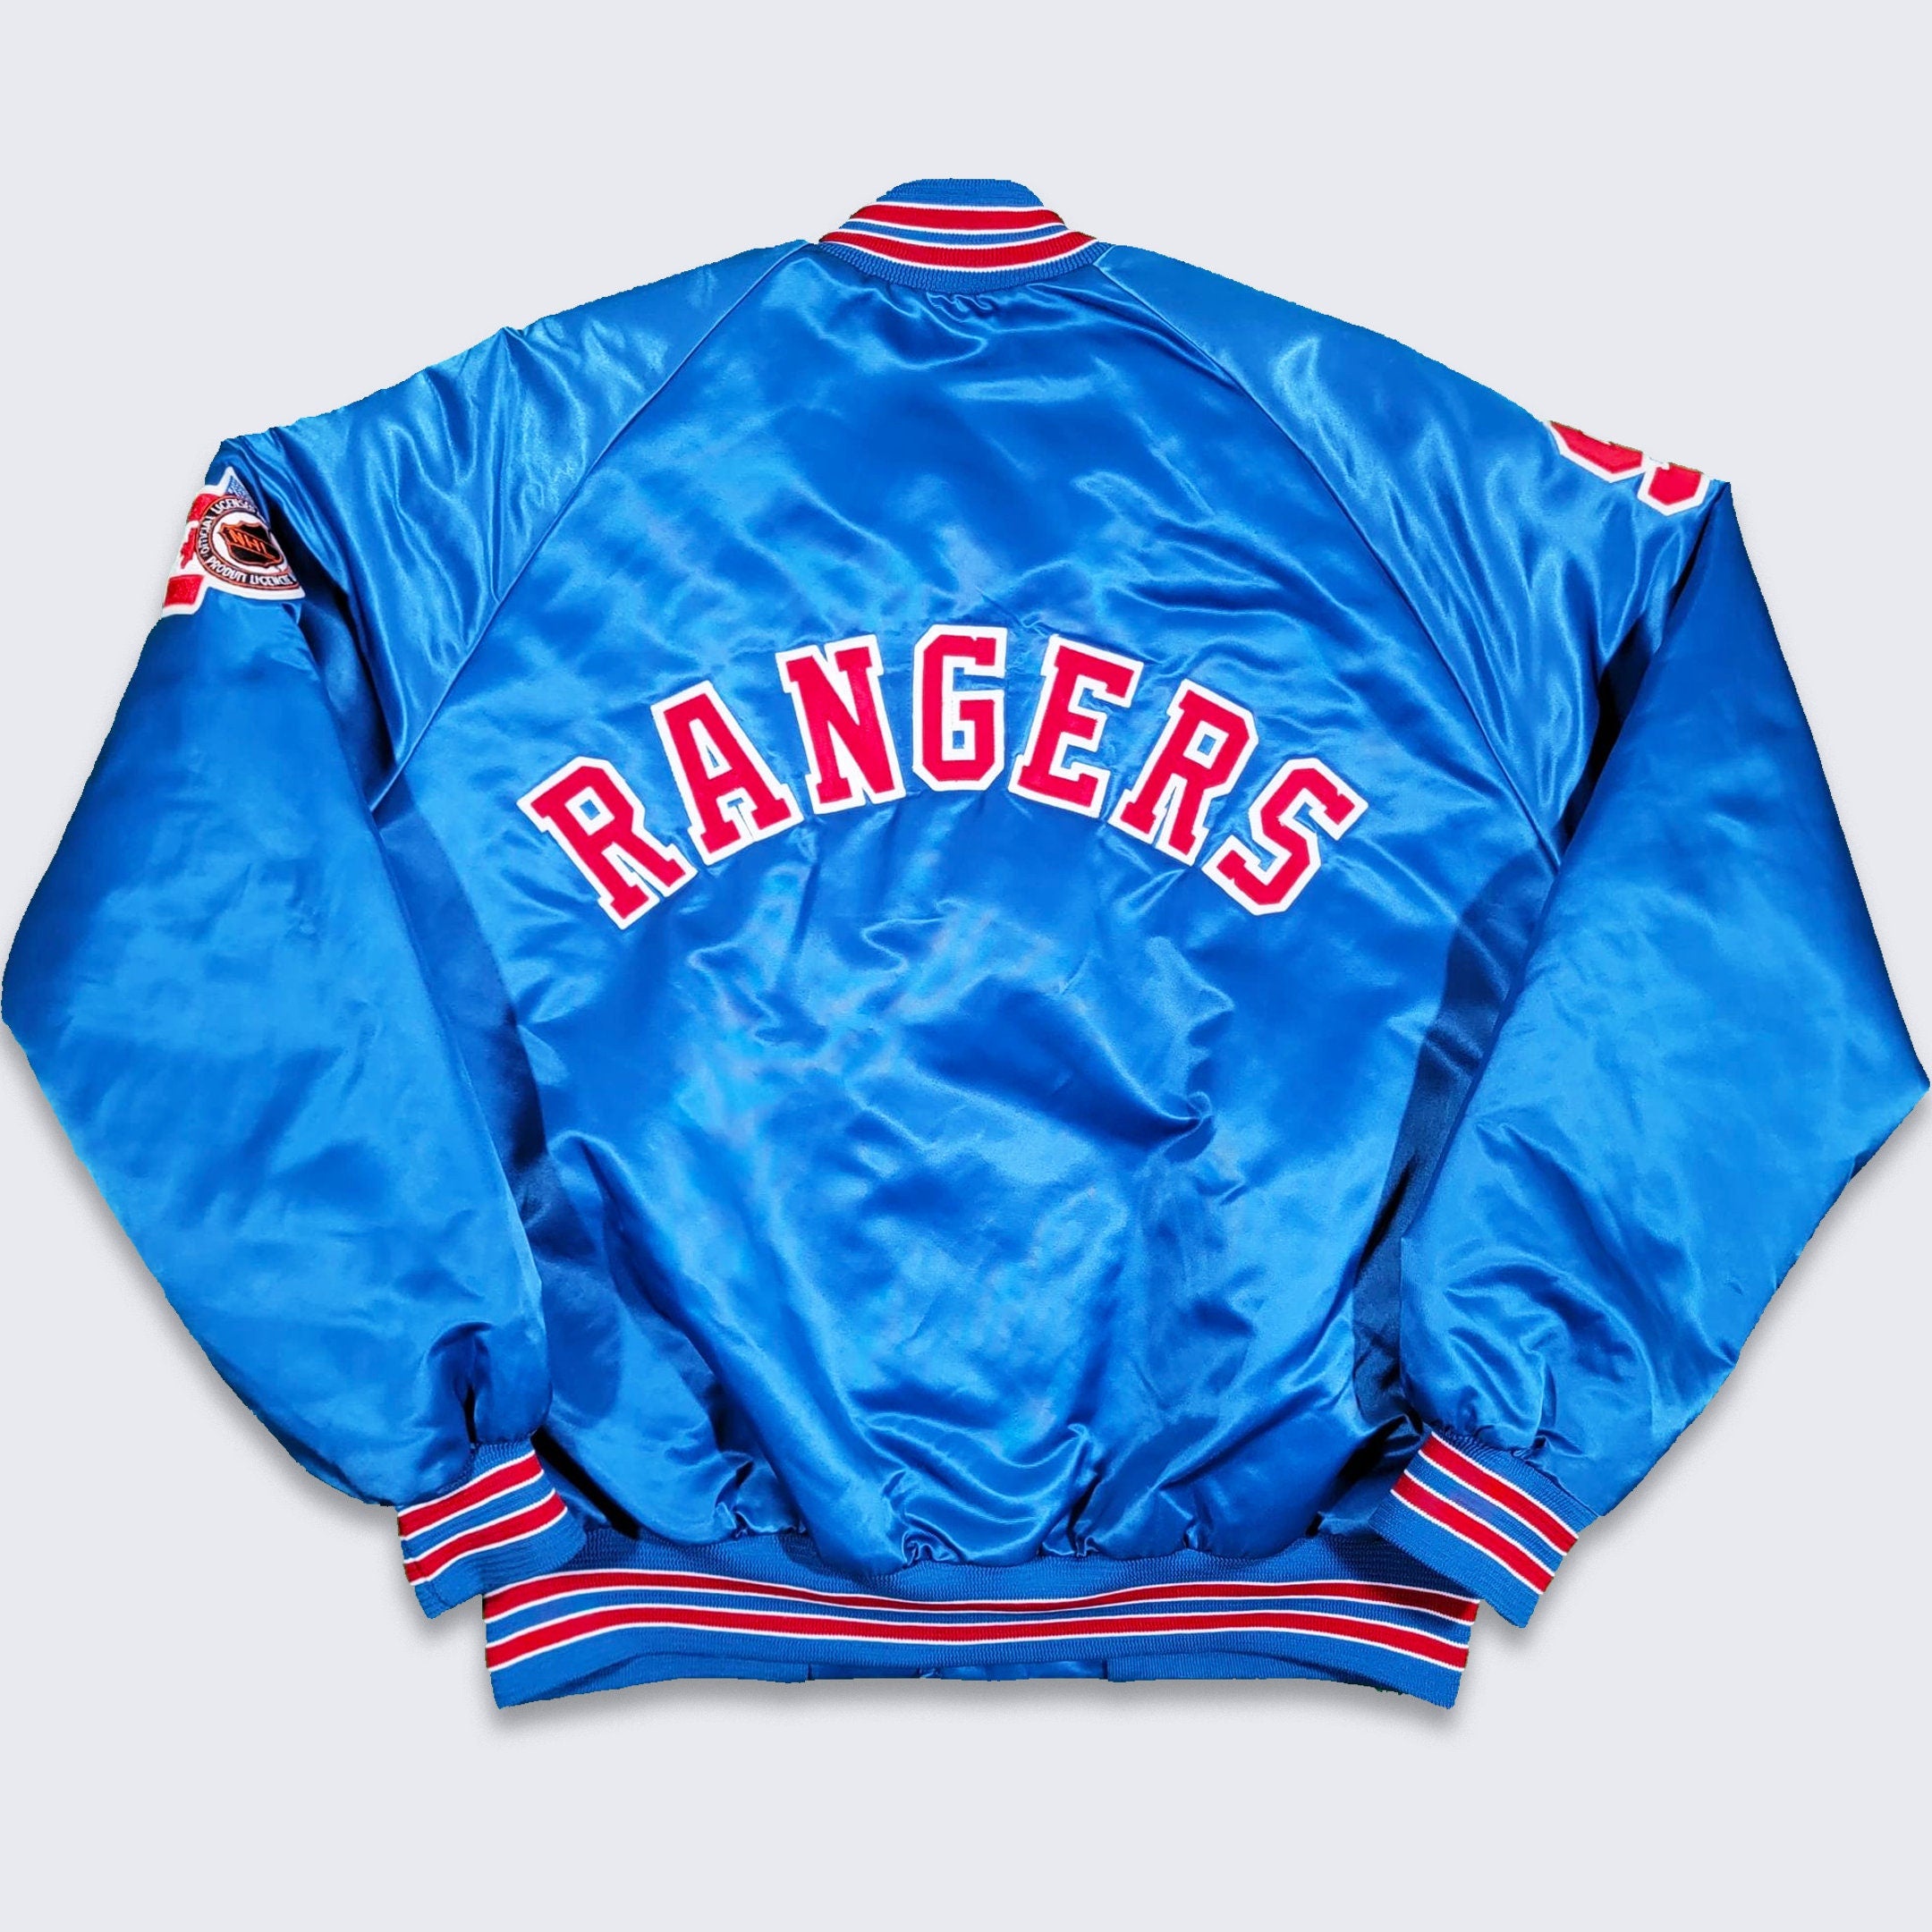 Vintage Texas Rangers Starter Satin Baseball Jacket, Size XL